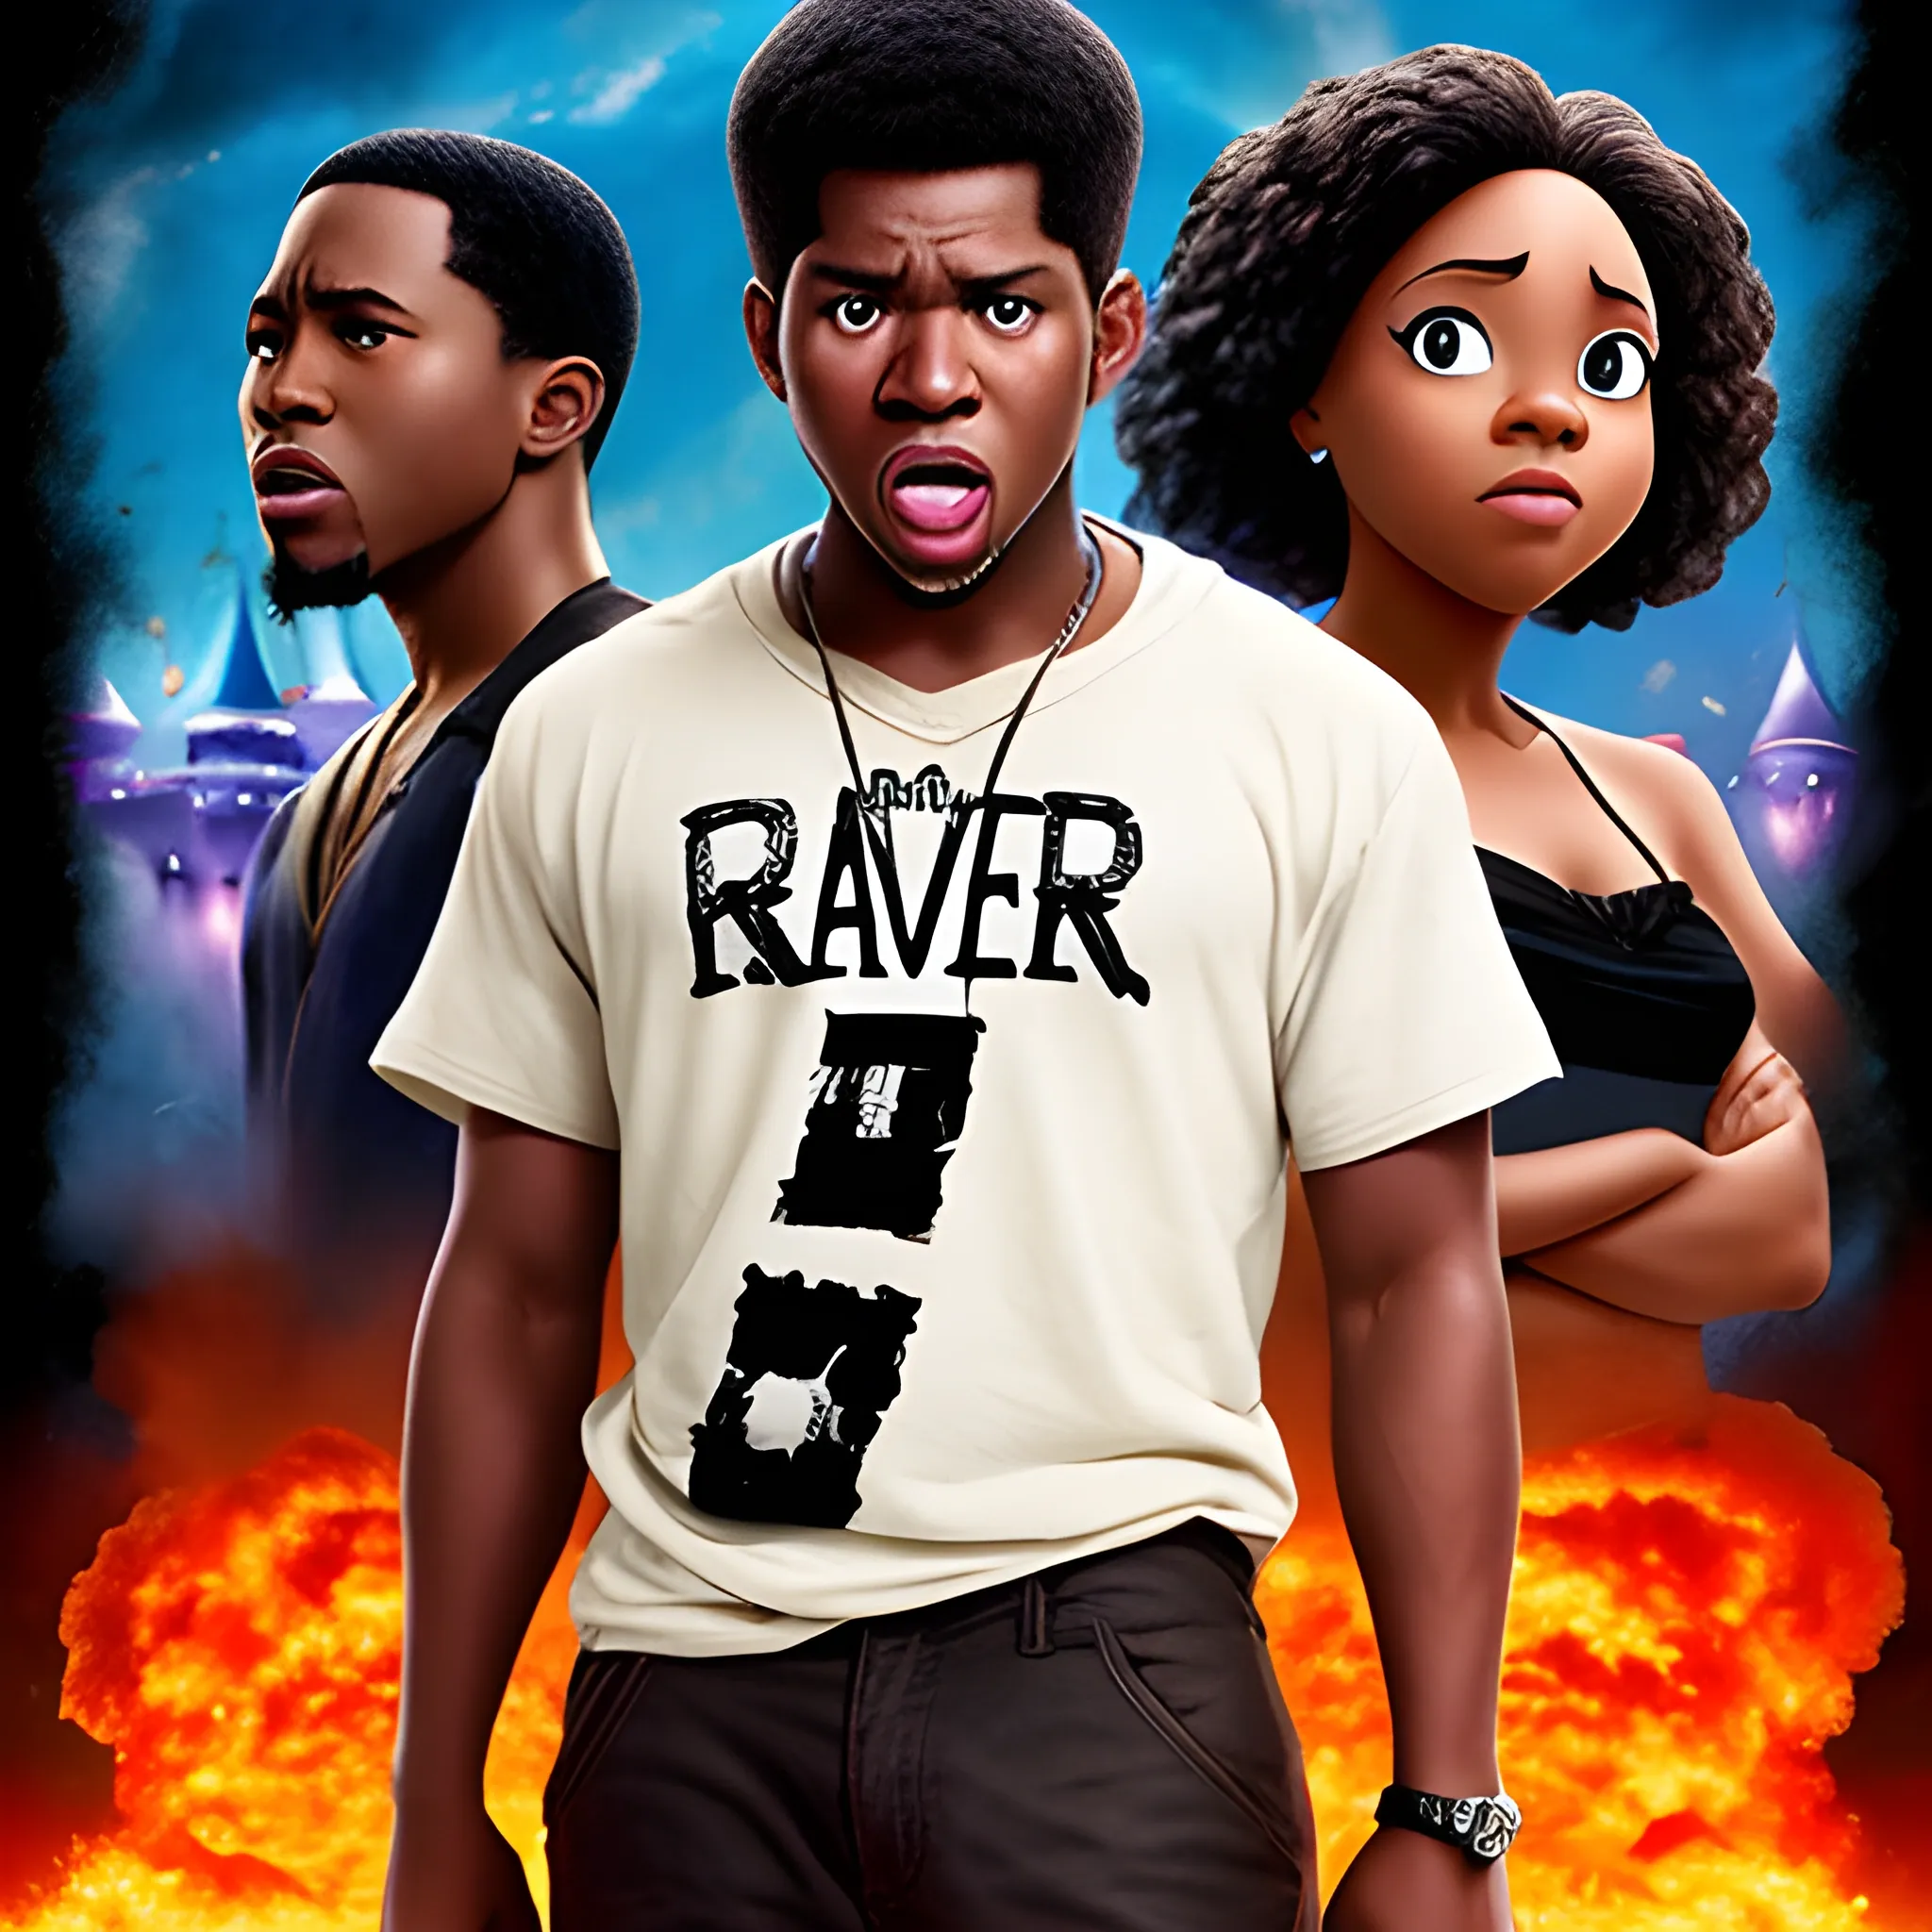 Black-people Raper  hater Disney movie poster 